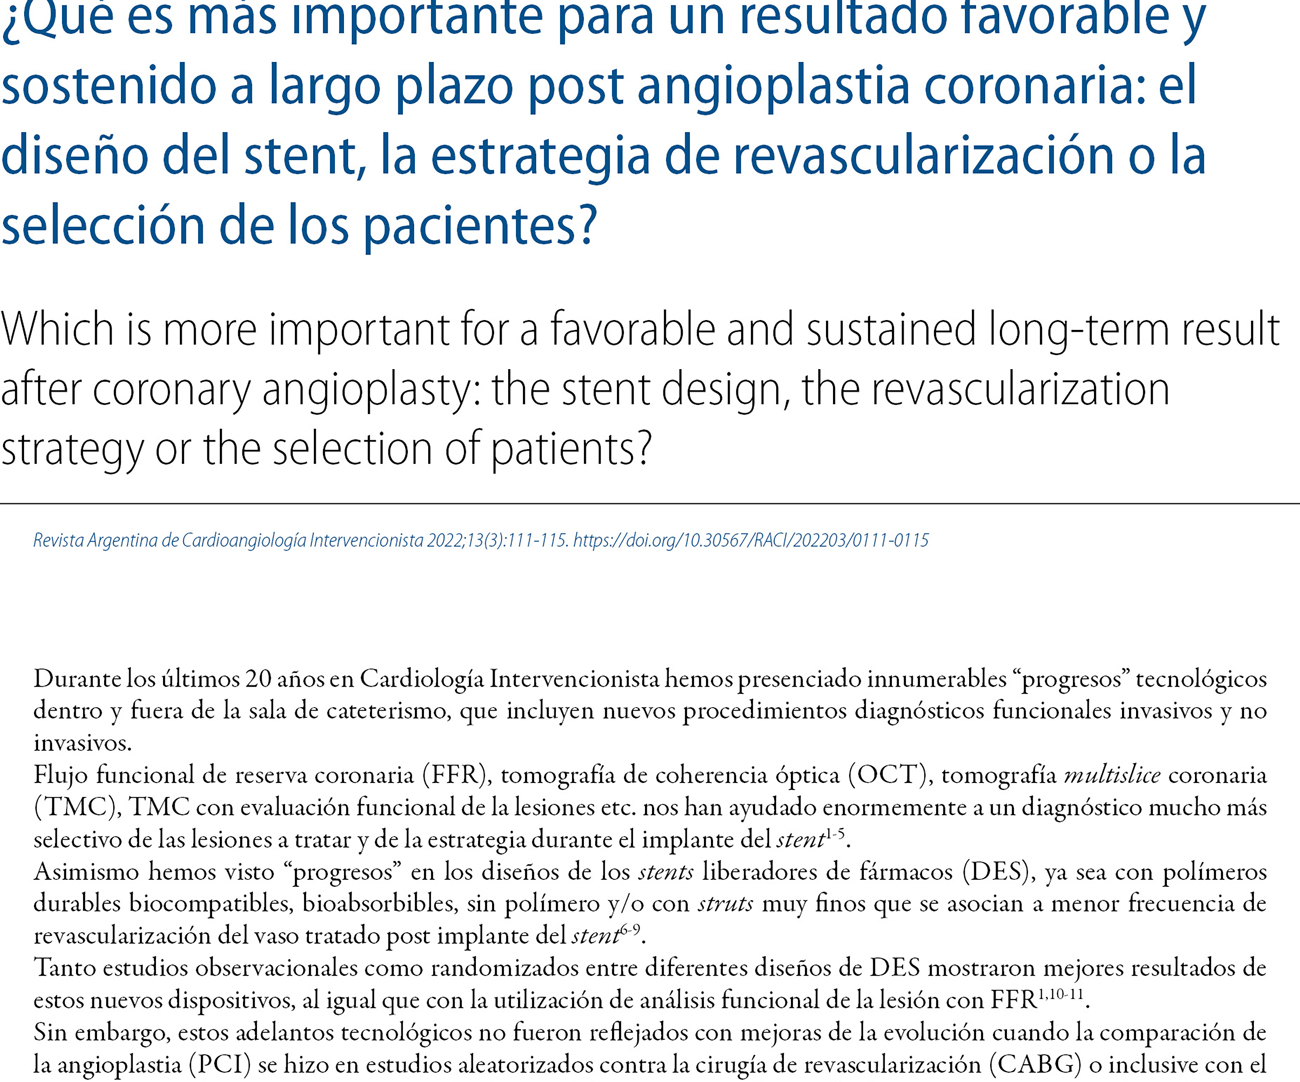 ¿Qué es más importante para un resultado favorable y sostenido a largo plazo post angioplastia coronaria: el diseño del stent, la estrategia de revascularización o la selección de los pacientes?